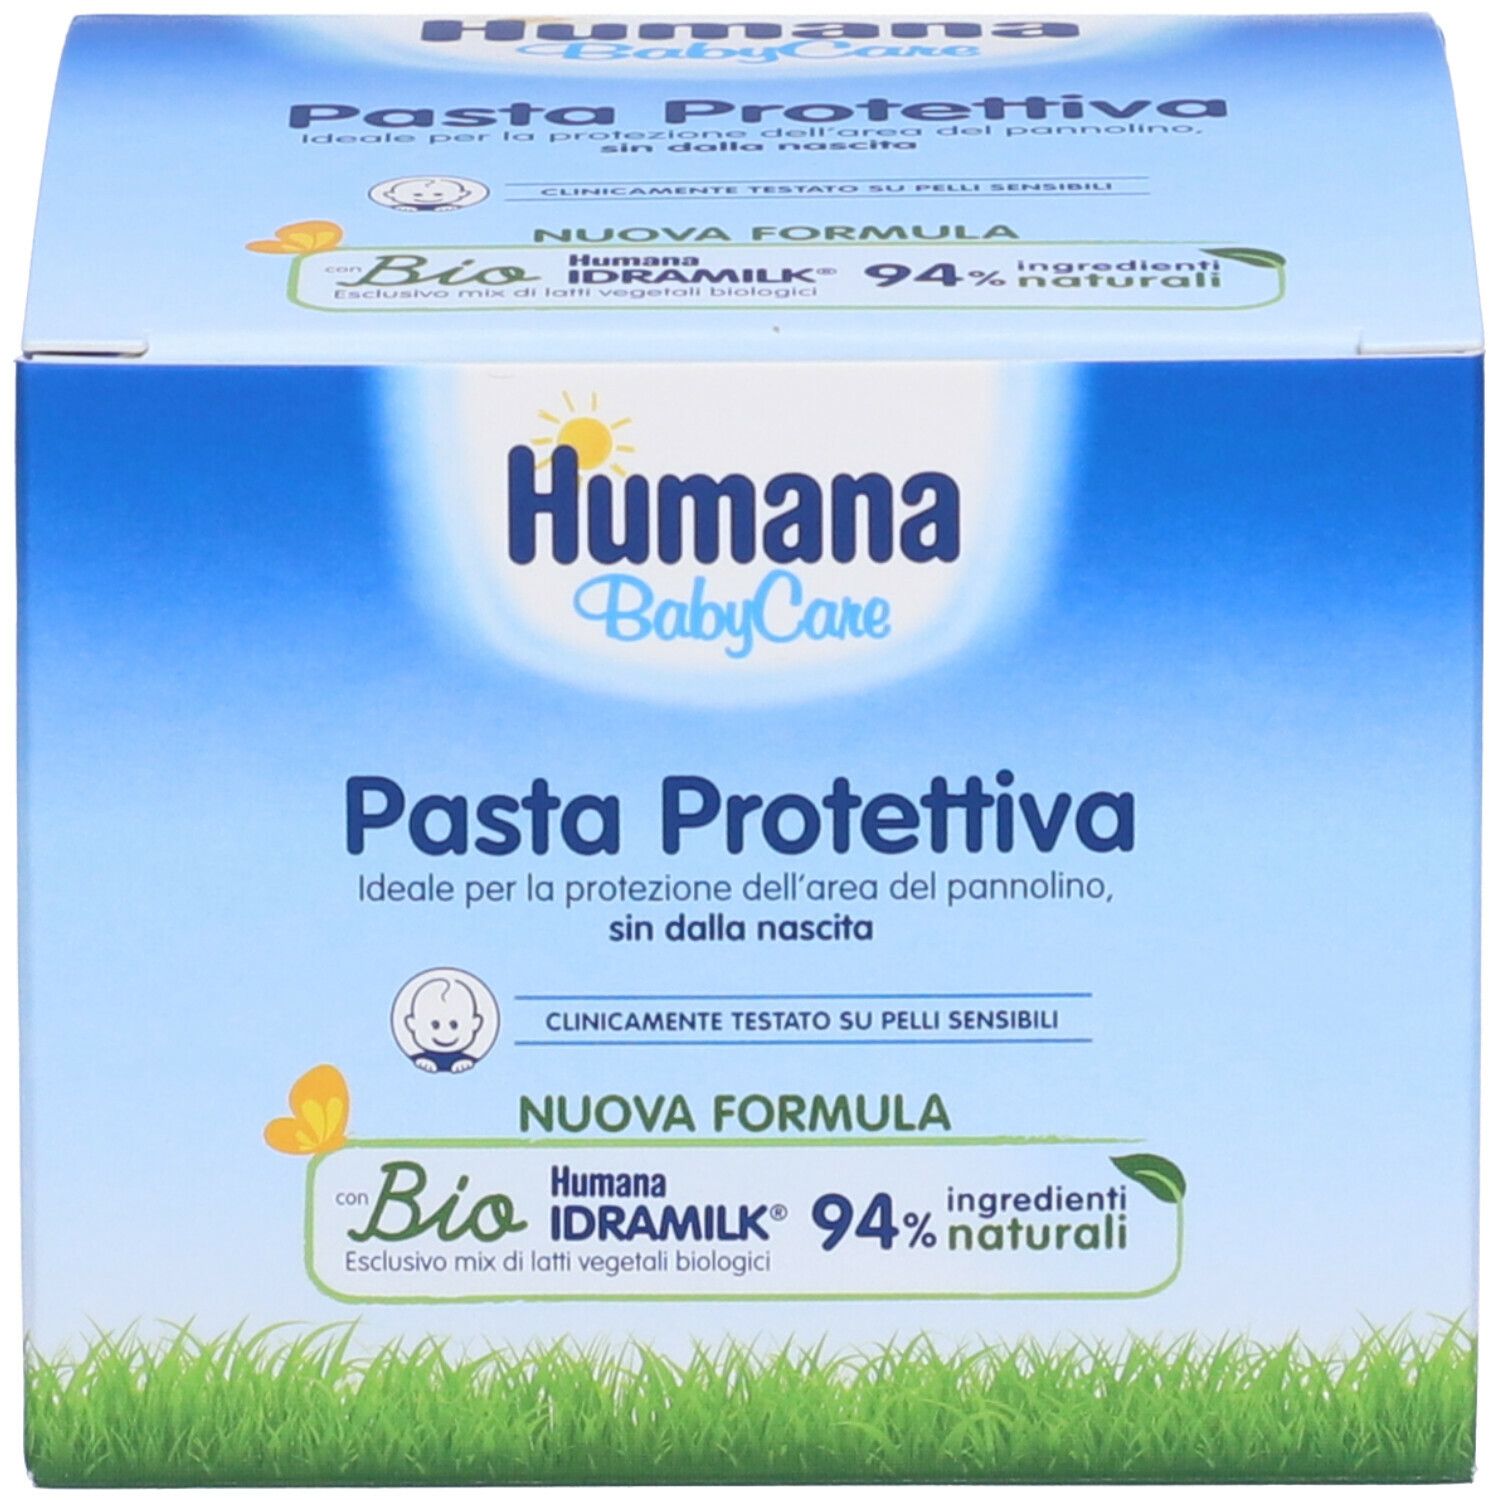 Humana BabyCare Pasta ProtettivaHumana BabyCare Pasta Protettiva